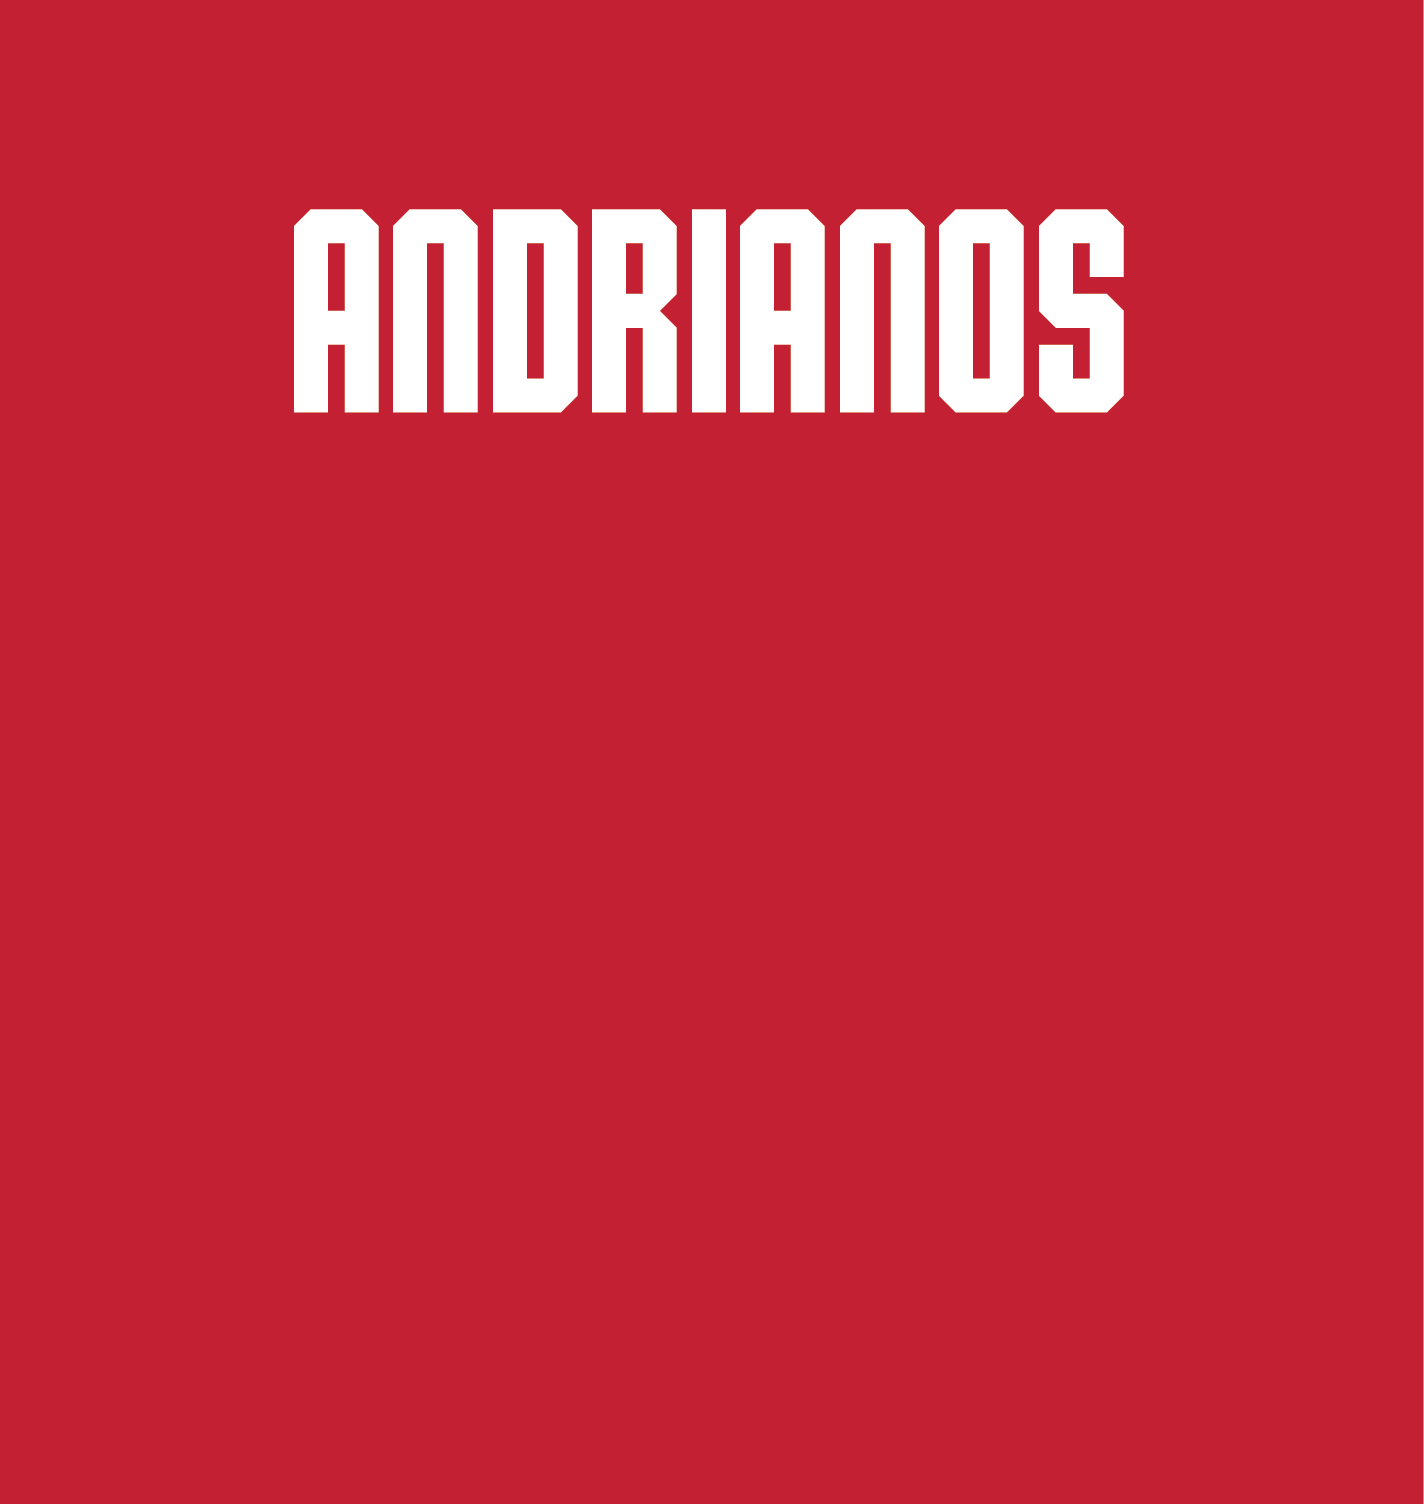 Nina Andrianos